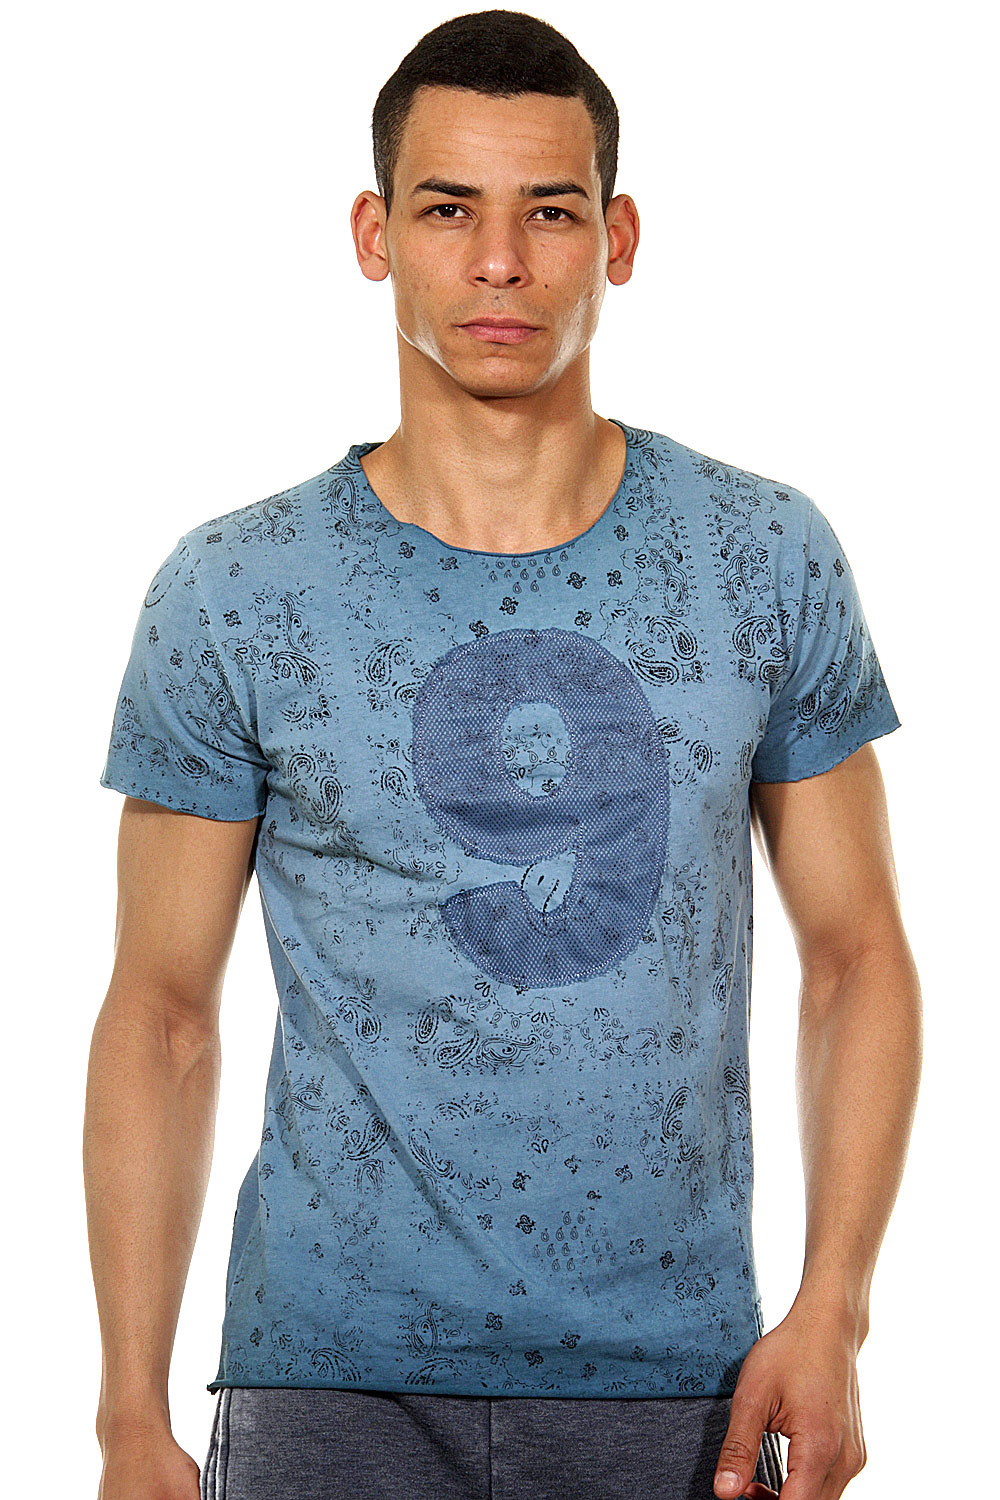 R-NEAL T-Shirt Rundhals slim fit auf oboy.de auf oboy.de